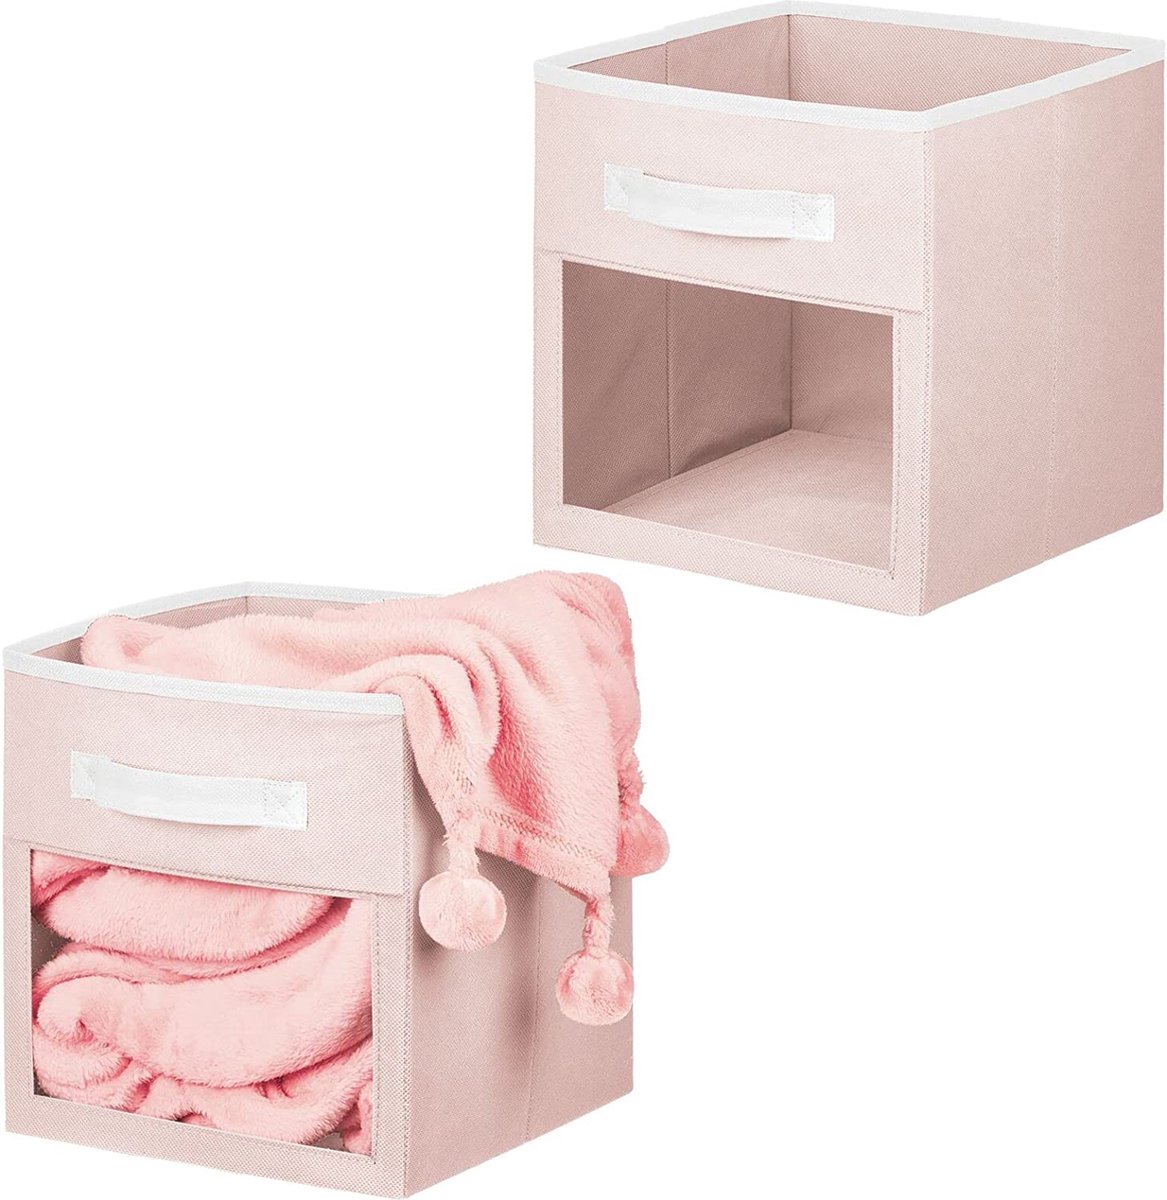 Set van 2 opbergdozen voor speelgoed of kleding, kubusvormige stoffen box met handvat en kijkvenster, opvouwbare speelgoedkist van stof, lichtroze en wit